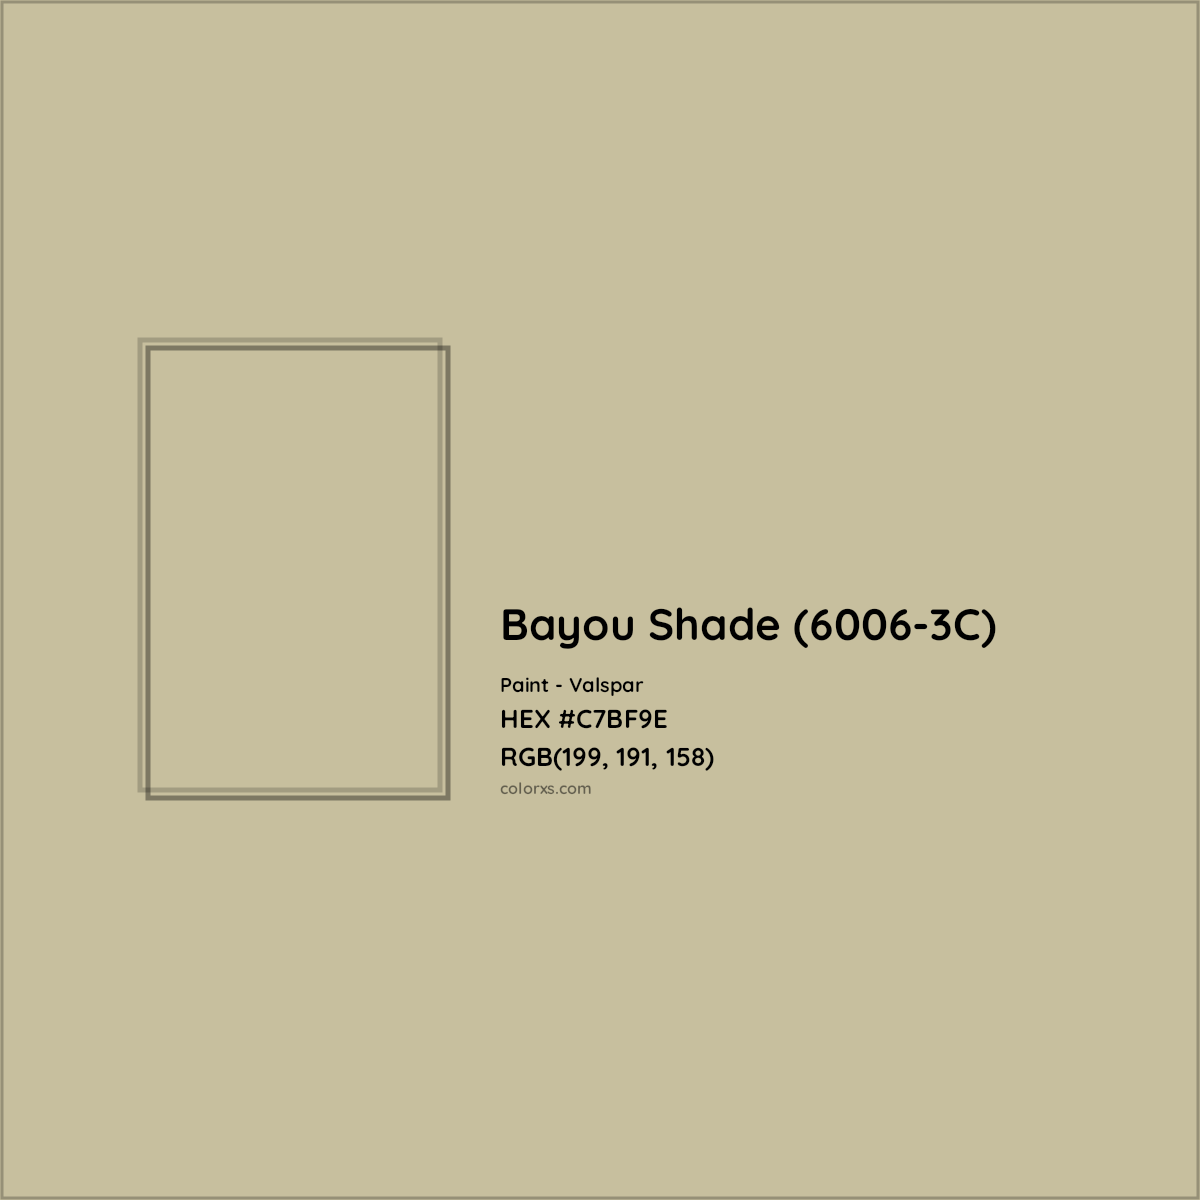 HEX #C7BF9E Bayou Shade (6006-3C) Paint Valspar - Color Code